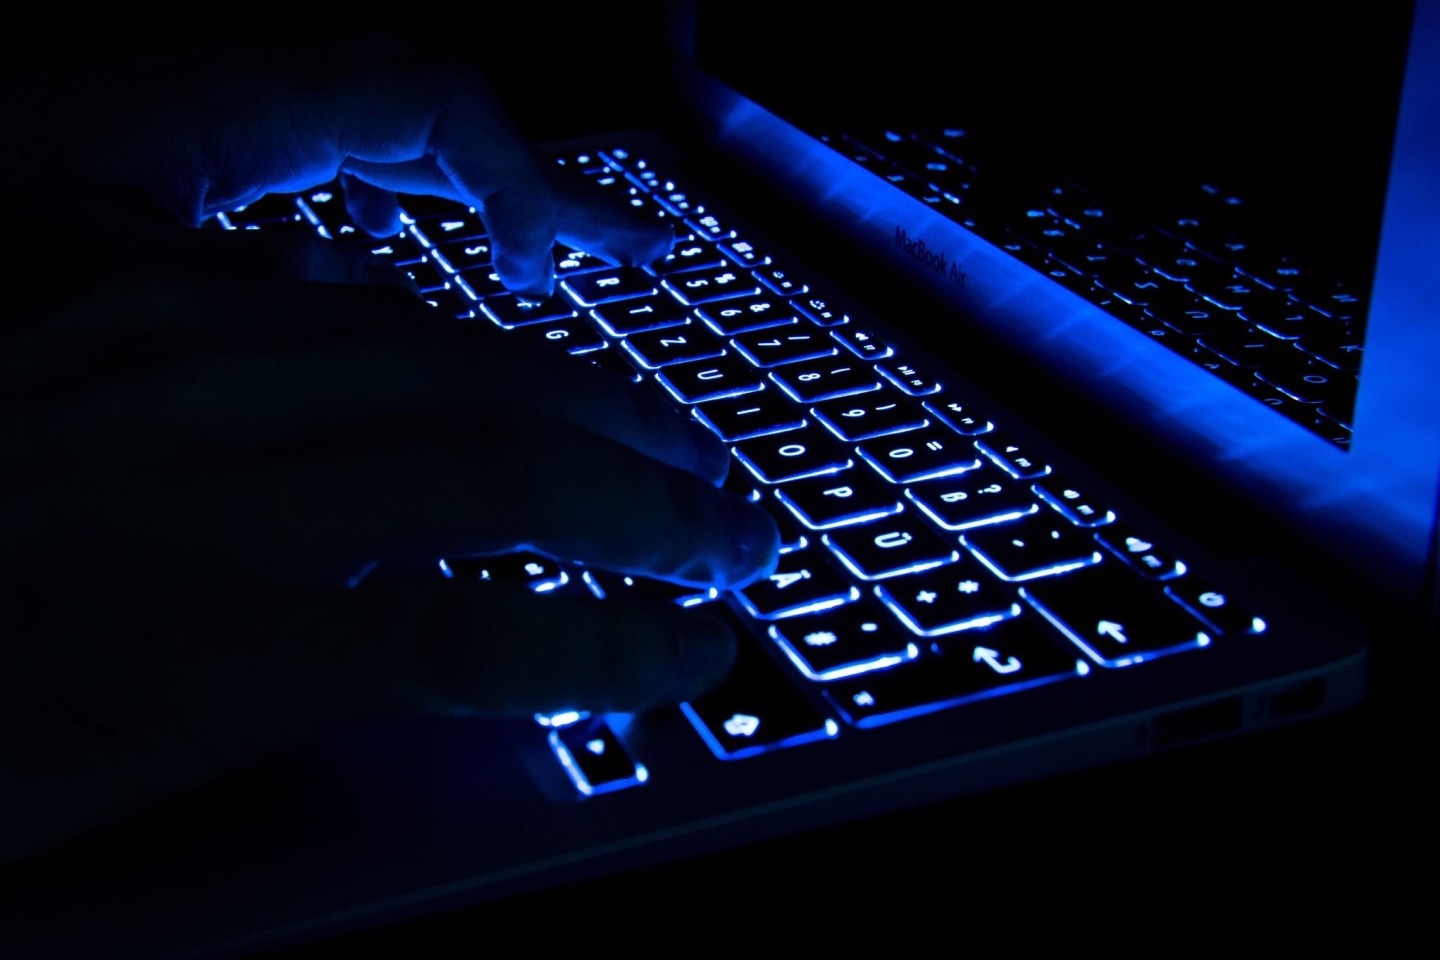 Killer-Suche im Darknet: Ein 28-Jähriger hat das versucht, um einen Nebenbuhler töten zu lassen.